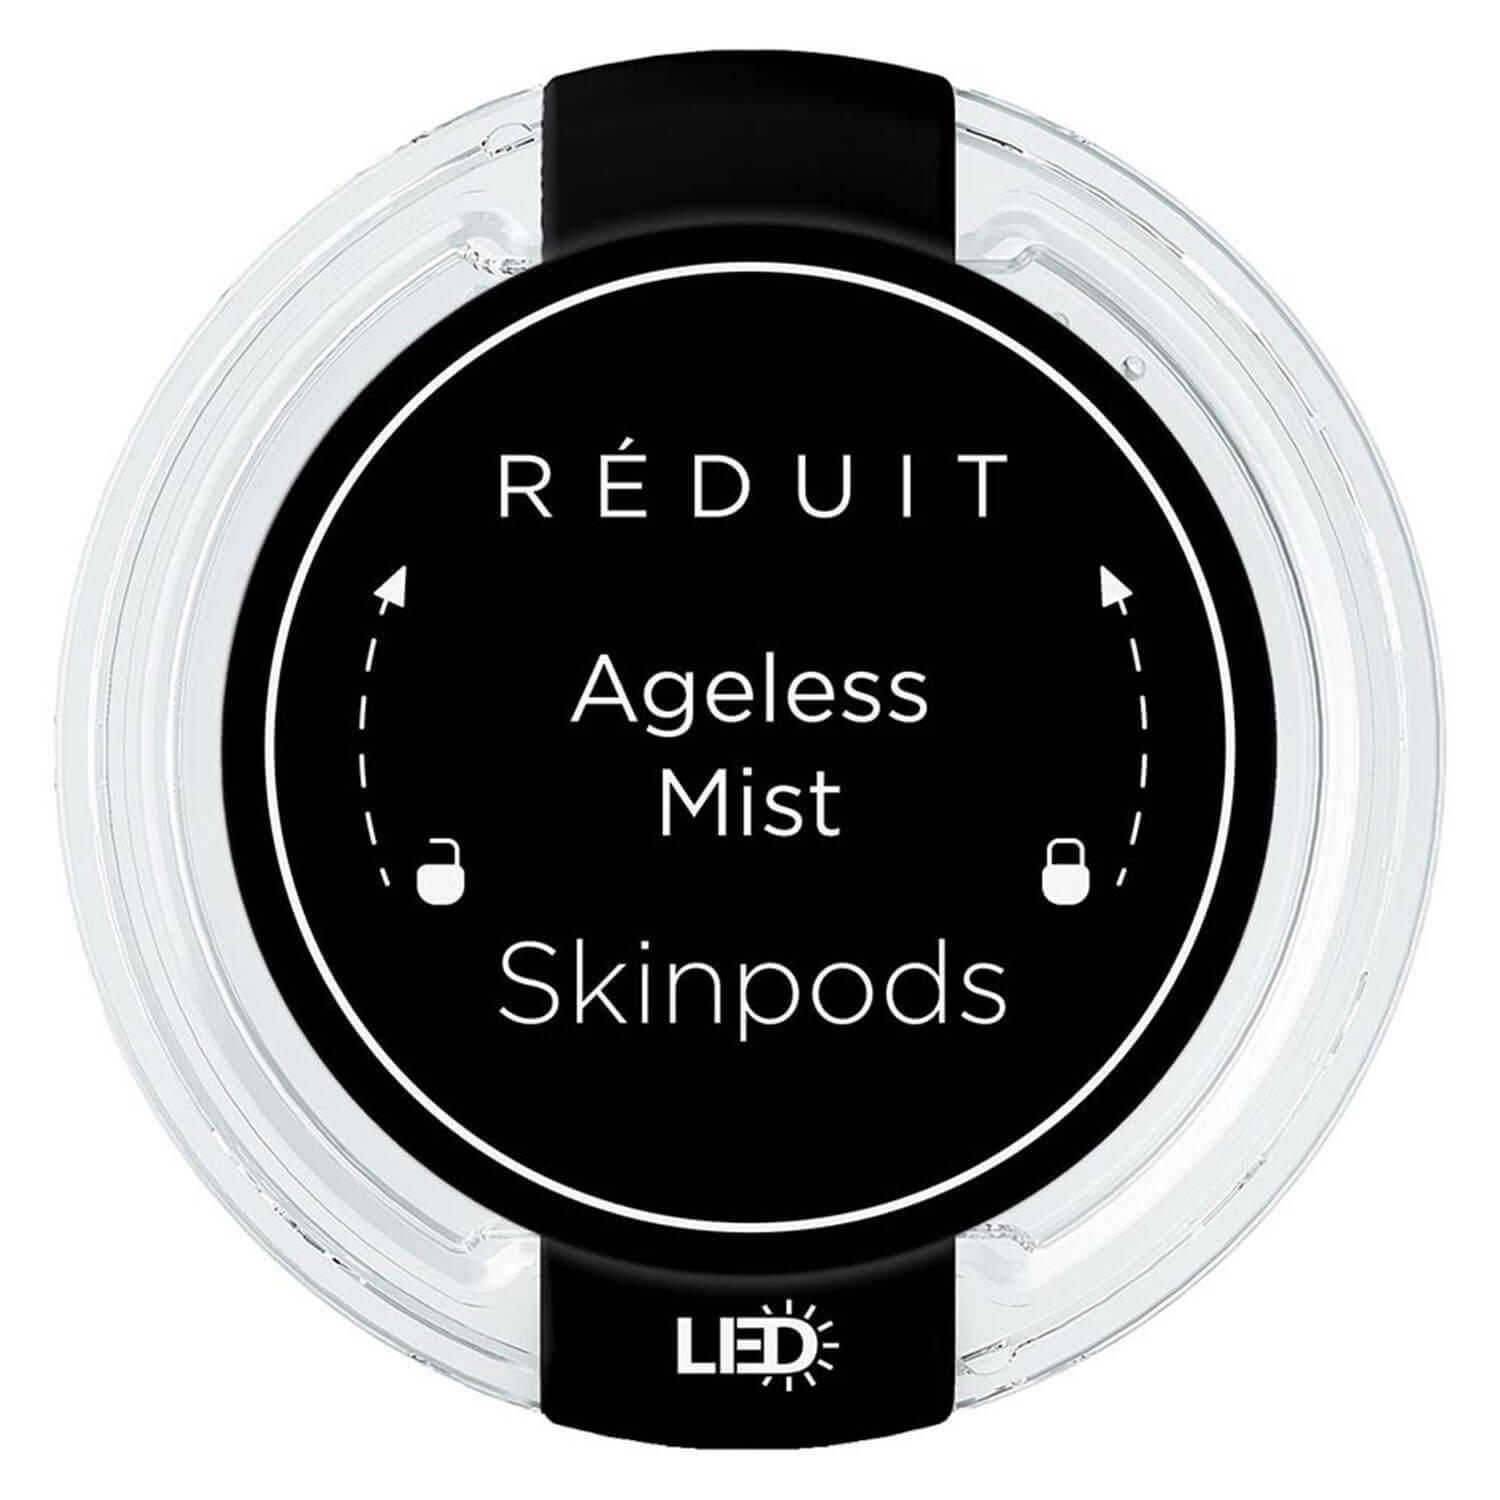 RÉDUIT - Ageless Mist Skinpods LED